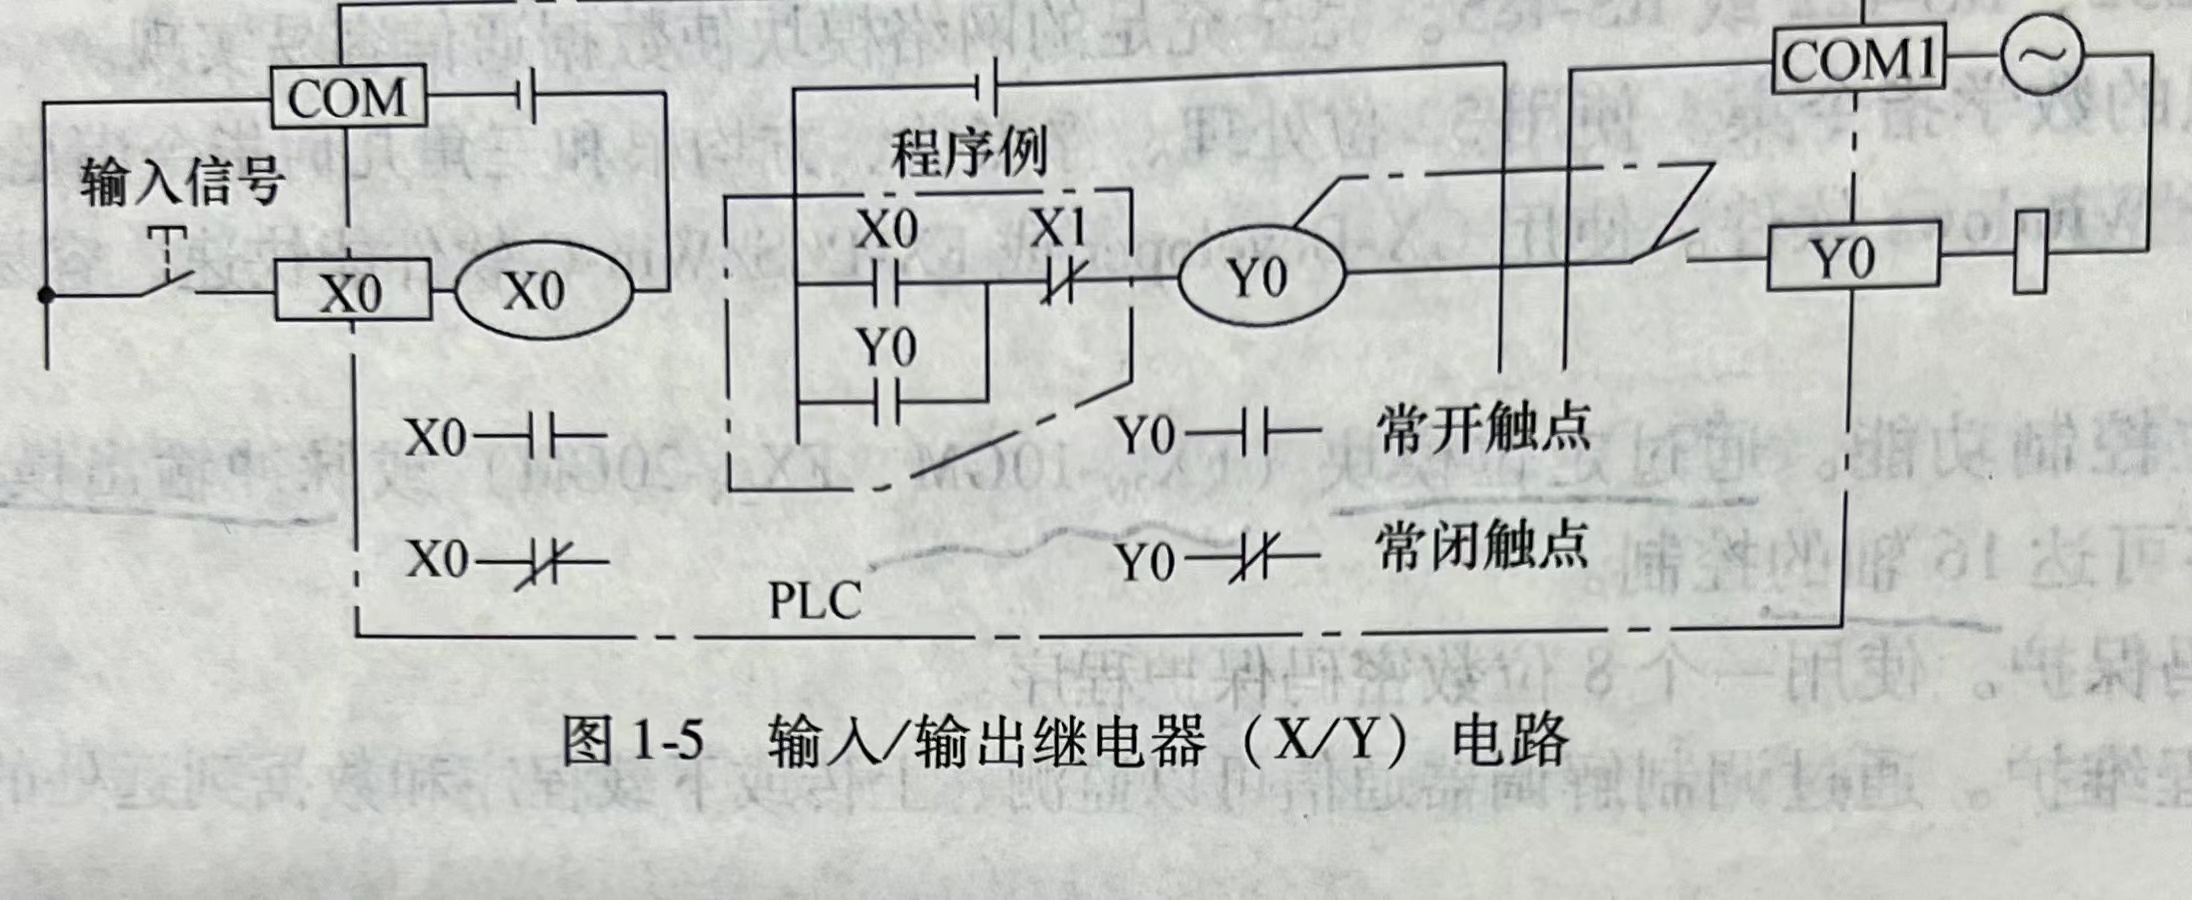 三菱FX系列PLC的编程器件——输入/输出继电器(X/Y)